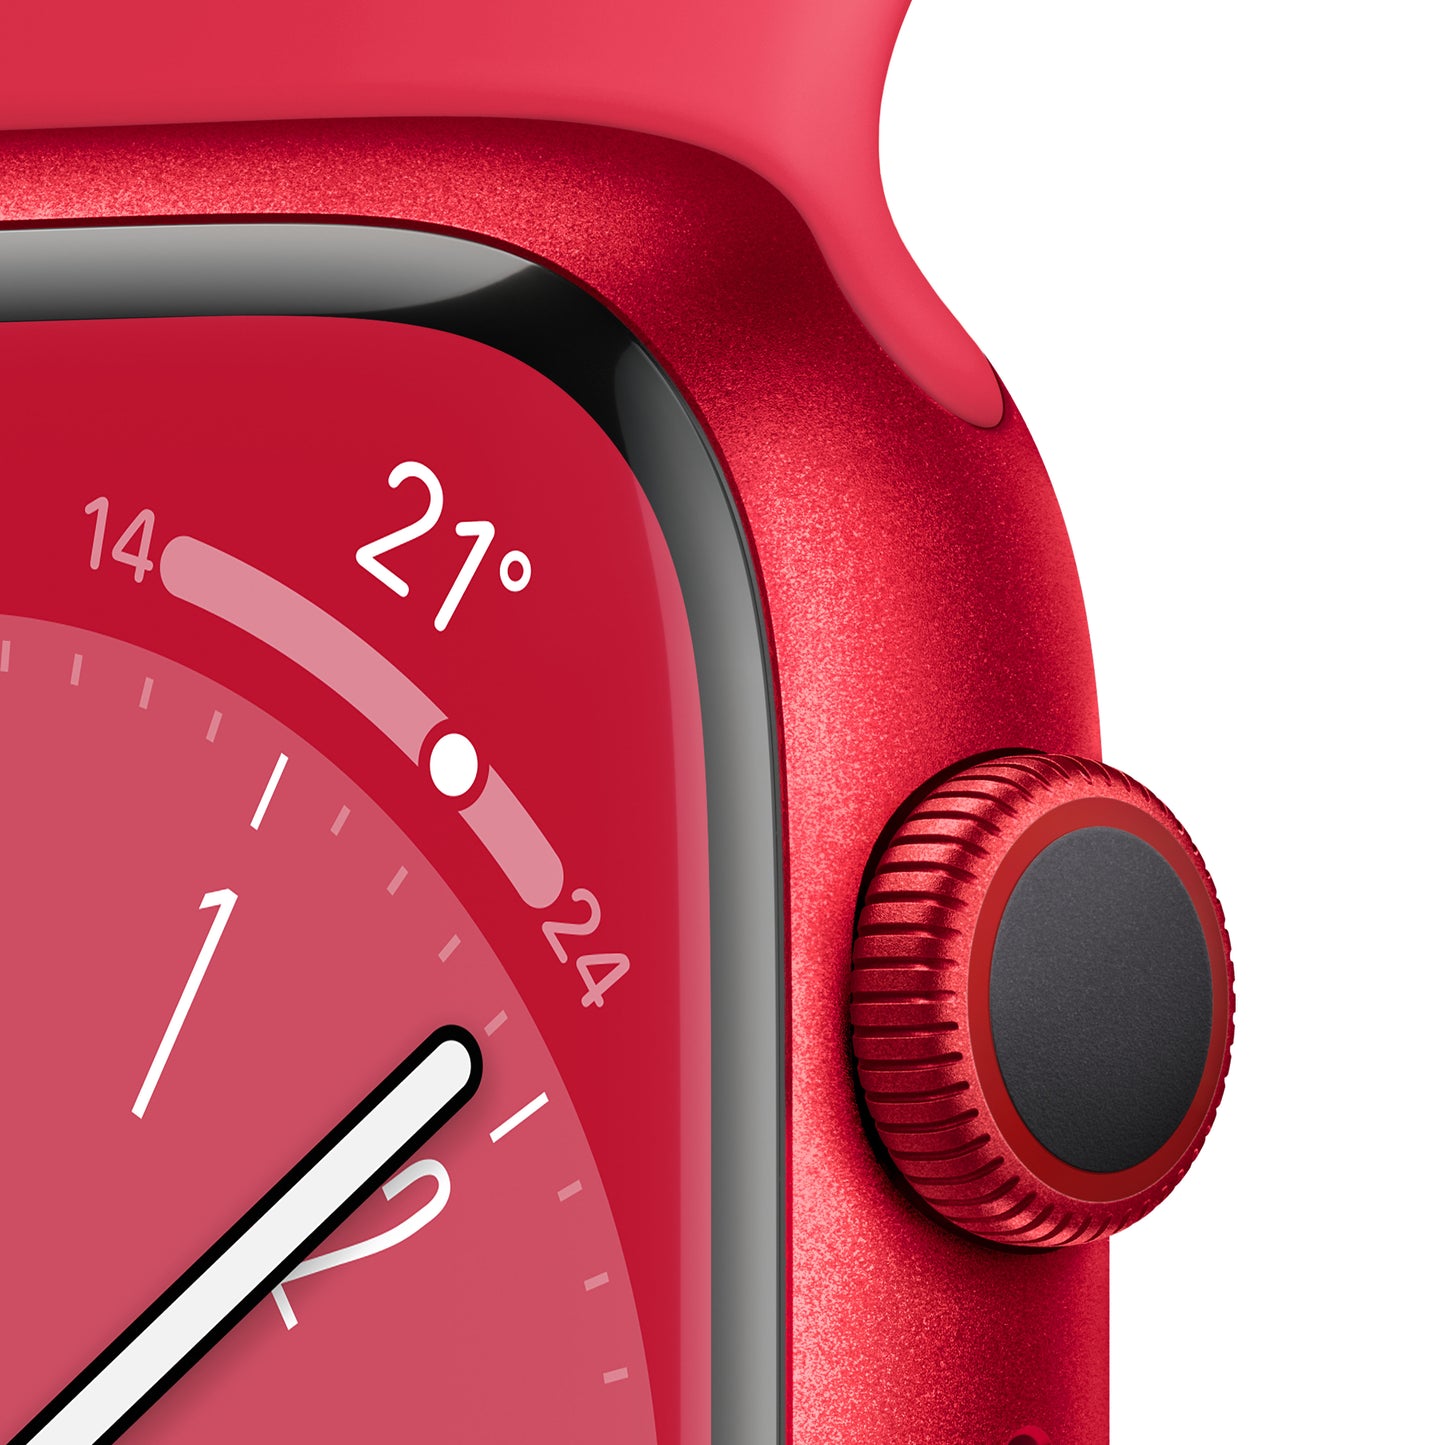 Apple Watch Series 8 (GPS + Cellular) - Caja de aluminio (PRODUCT)RED de 45 mm - Correa deportiva (PRODUCT)RED - Talla única